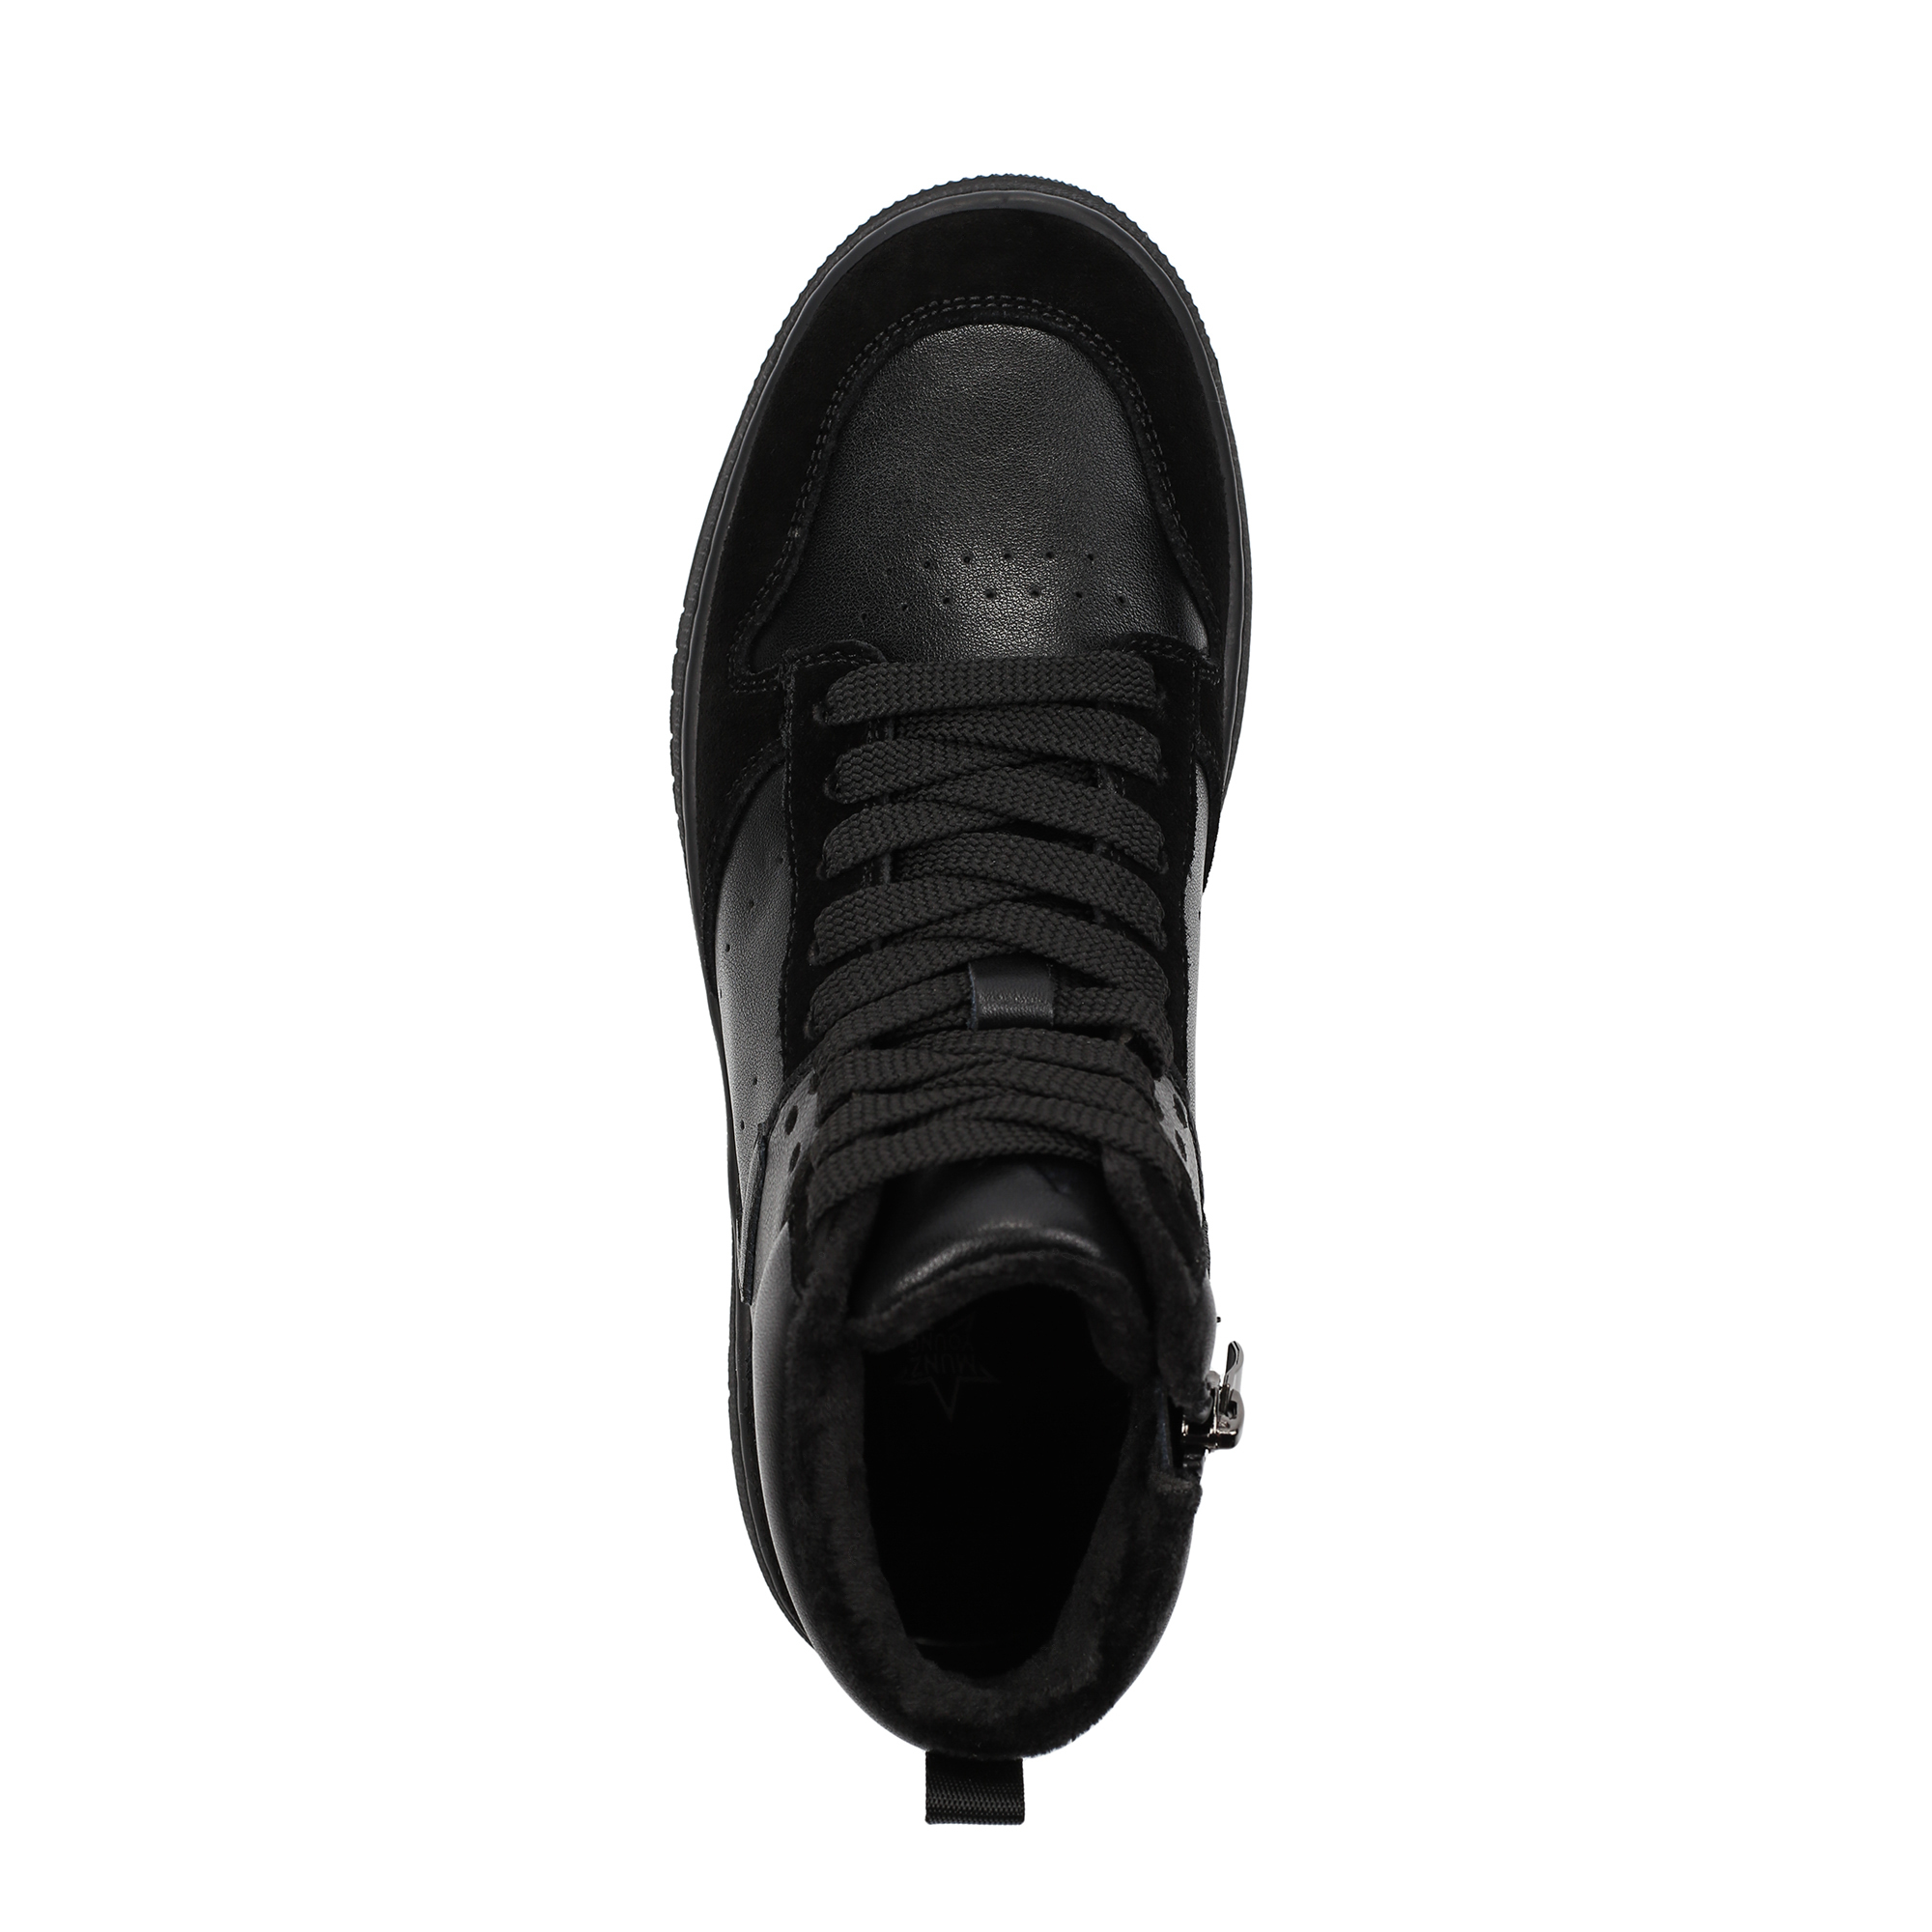 Ботинки MUNZ YOUNG 098-3451B-2602, цвет черный, размер 39 - фото 5